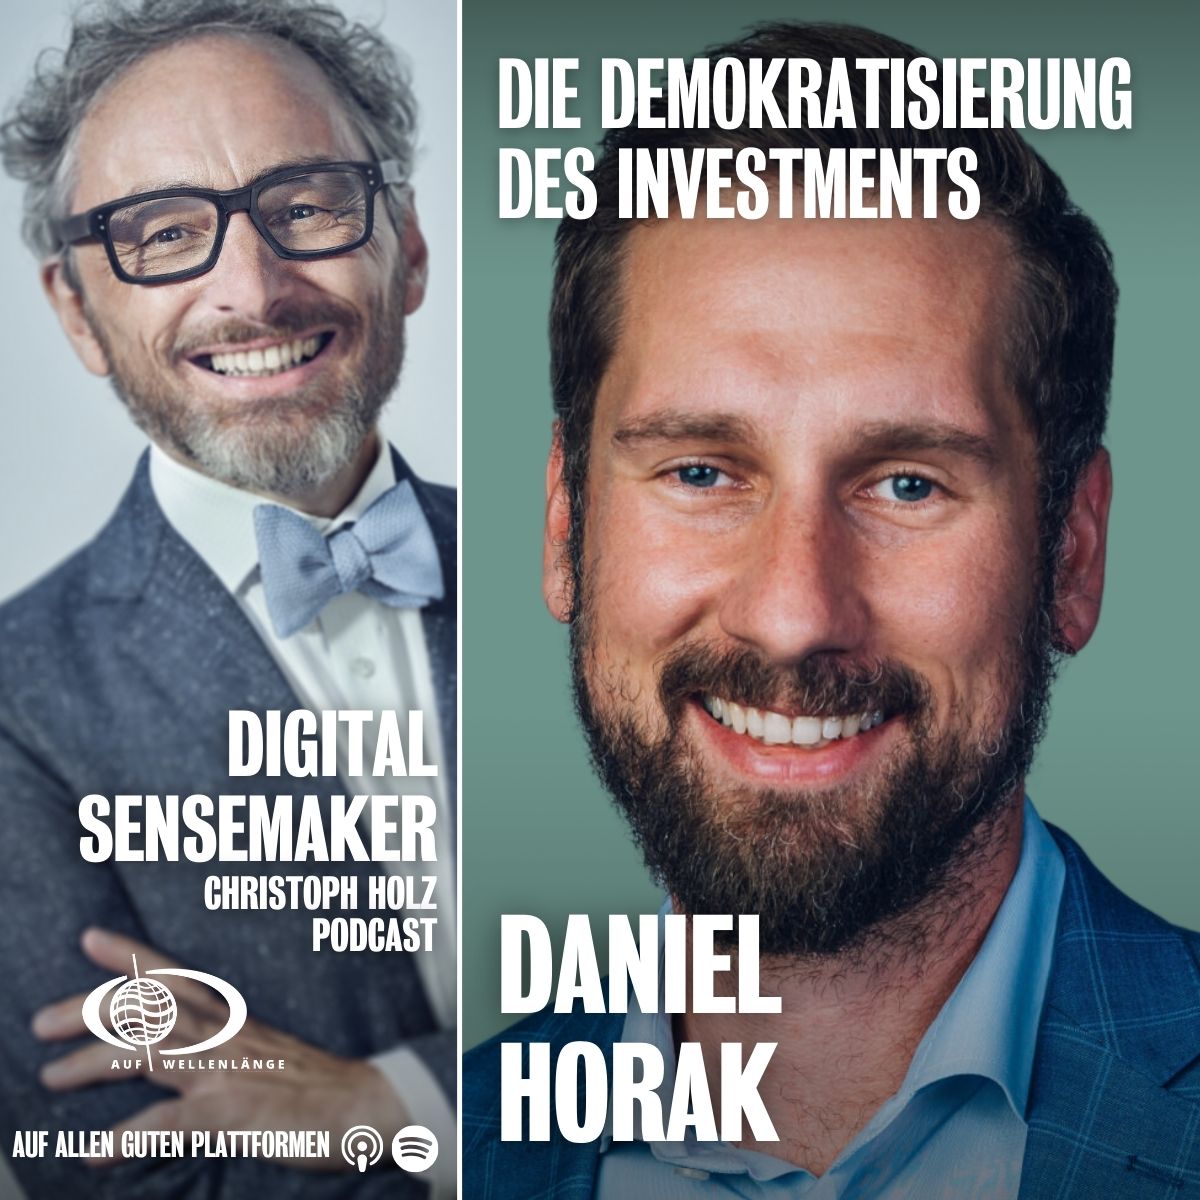 #139 "Die Demokratisierung des Investments", mit Daniel Horak, Co-Founder der Crowdinvesting Plattform CONDA